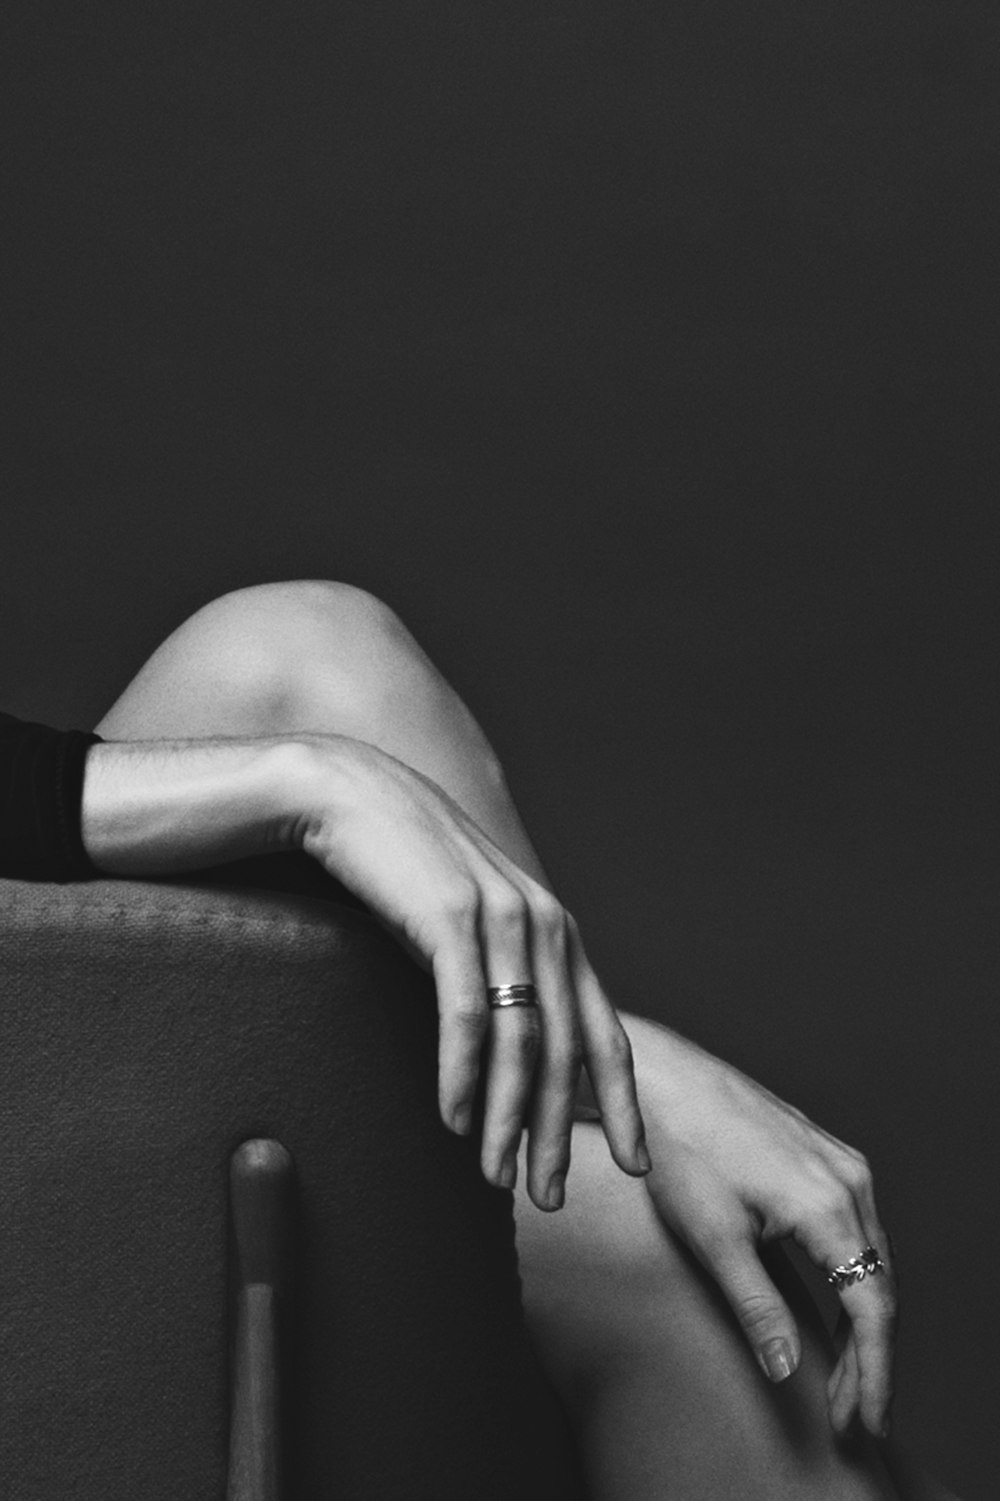 Fotografía en escala de grises de una persona sentada que lleva anillos con ambas manos